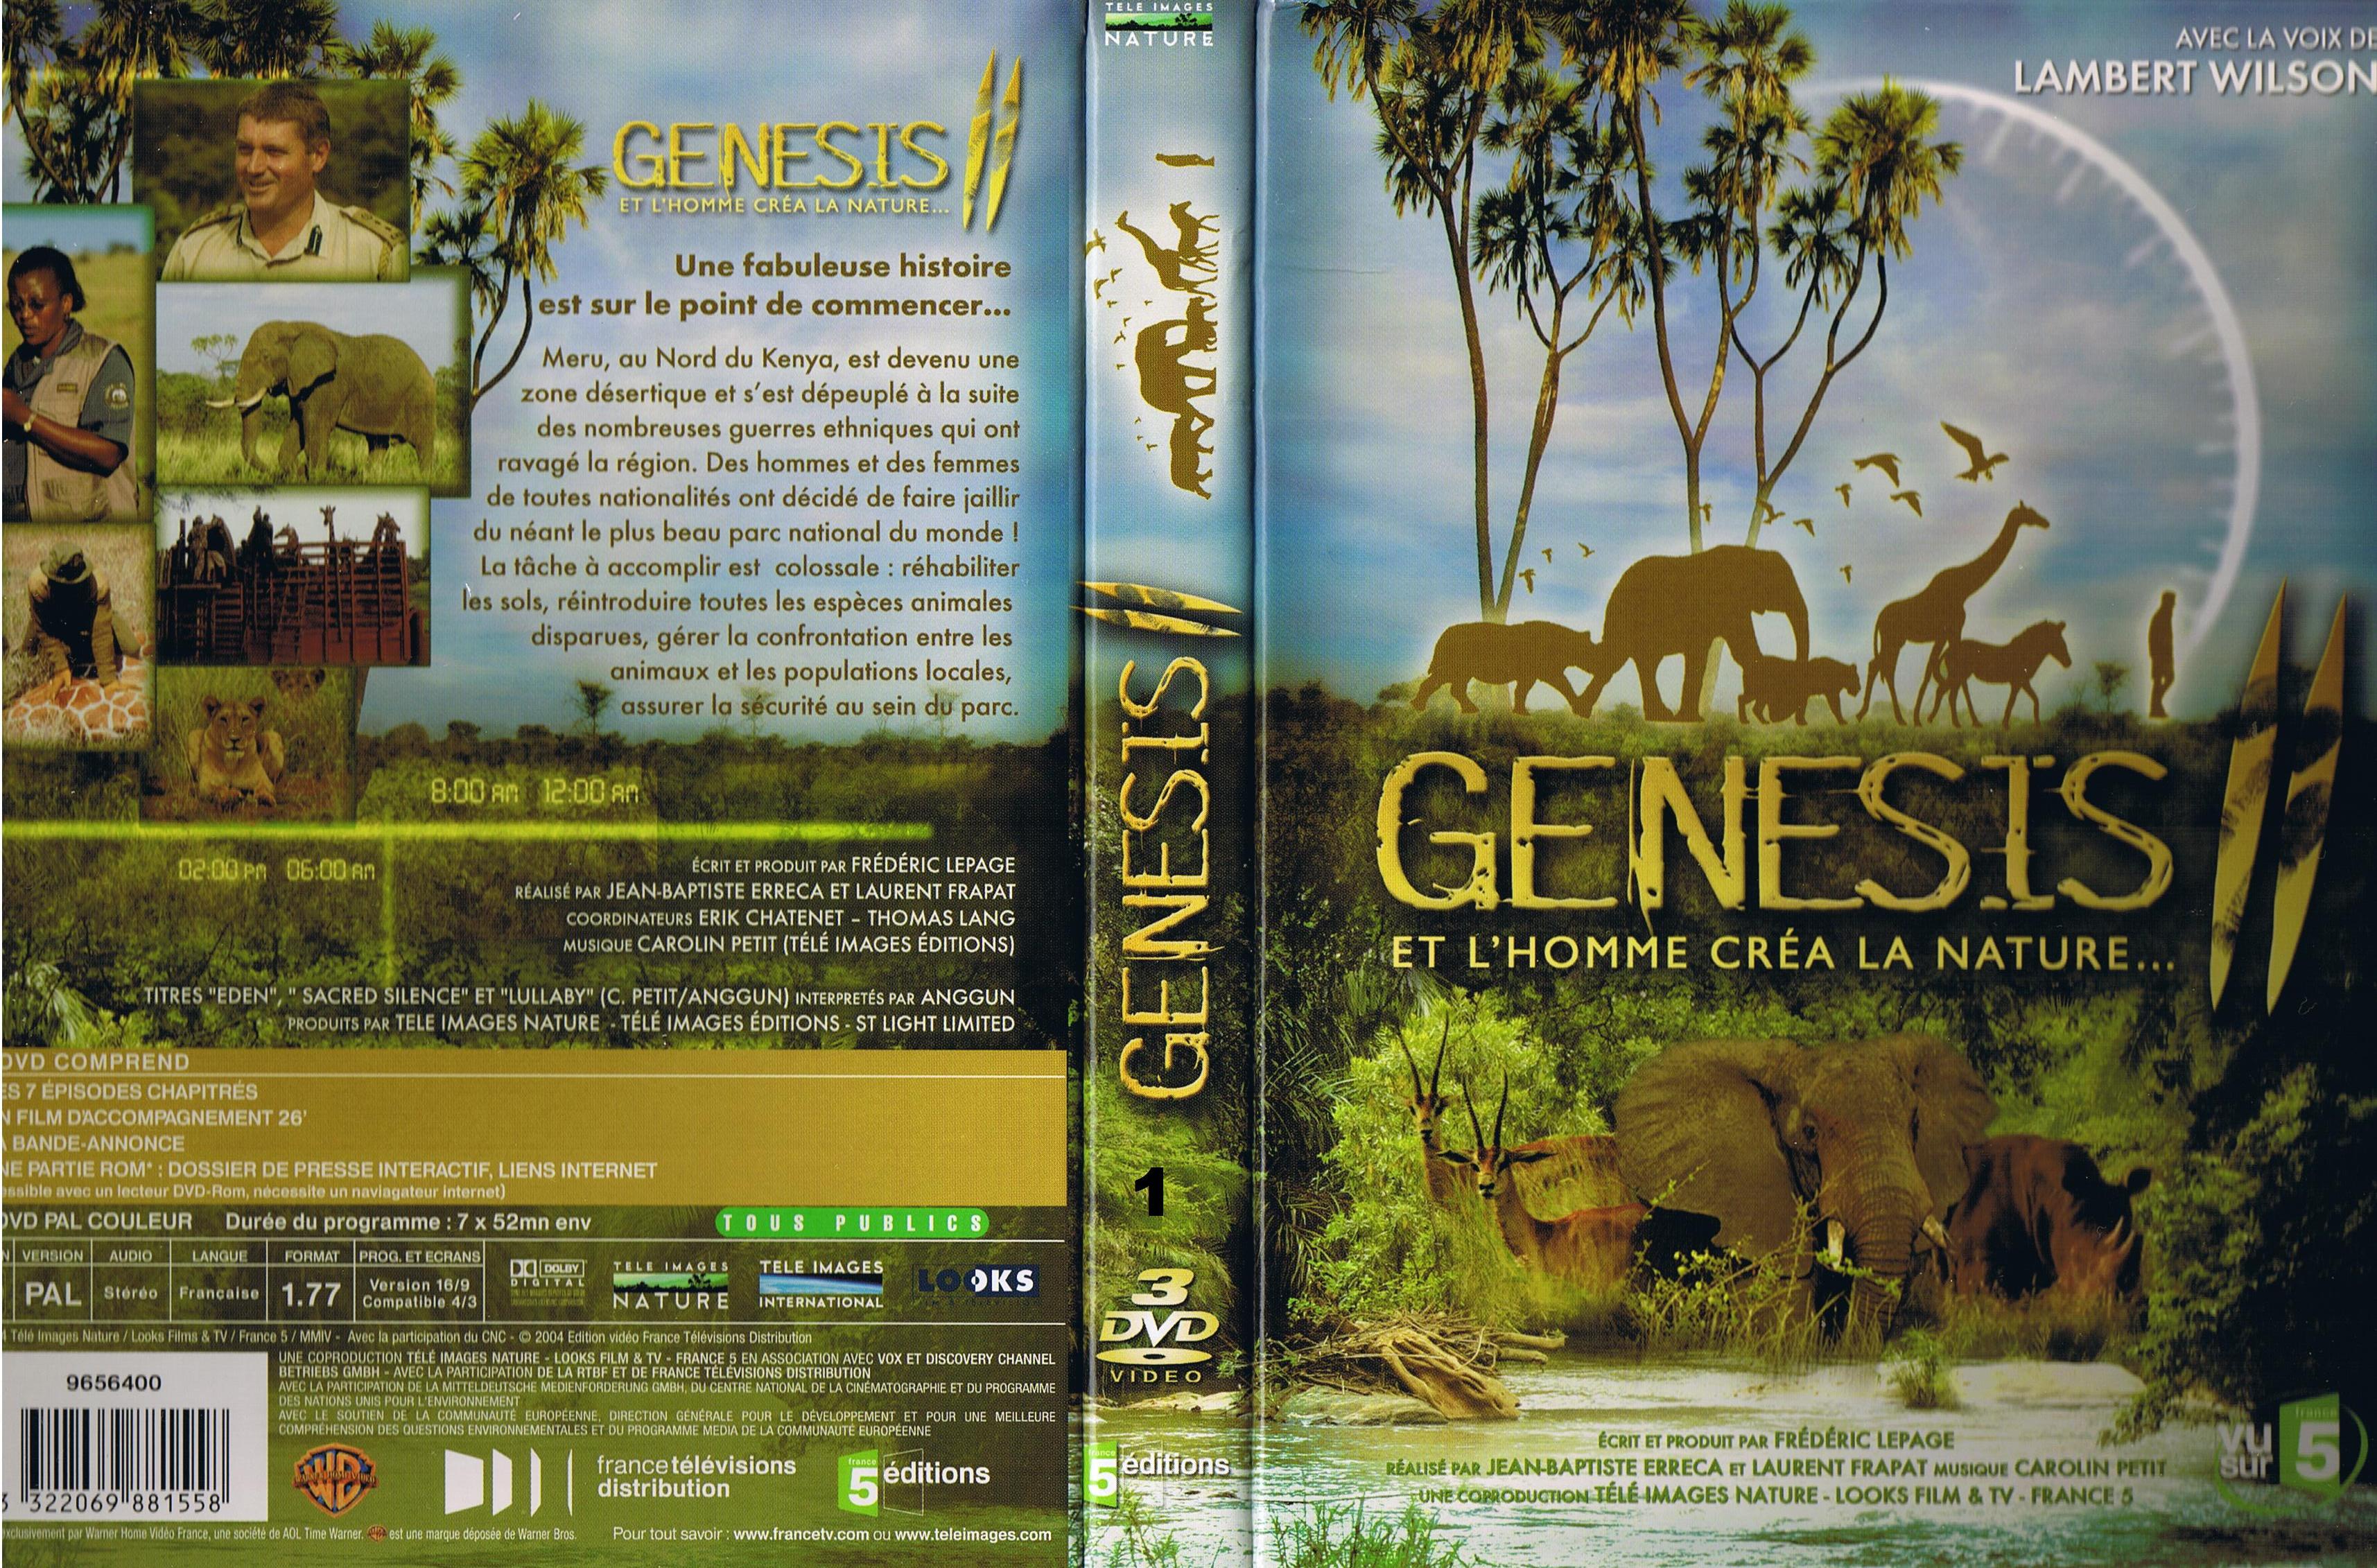 Jaquette DVD Genesis 2 et l